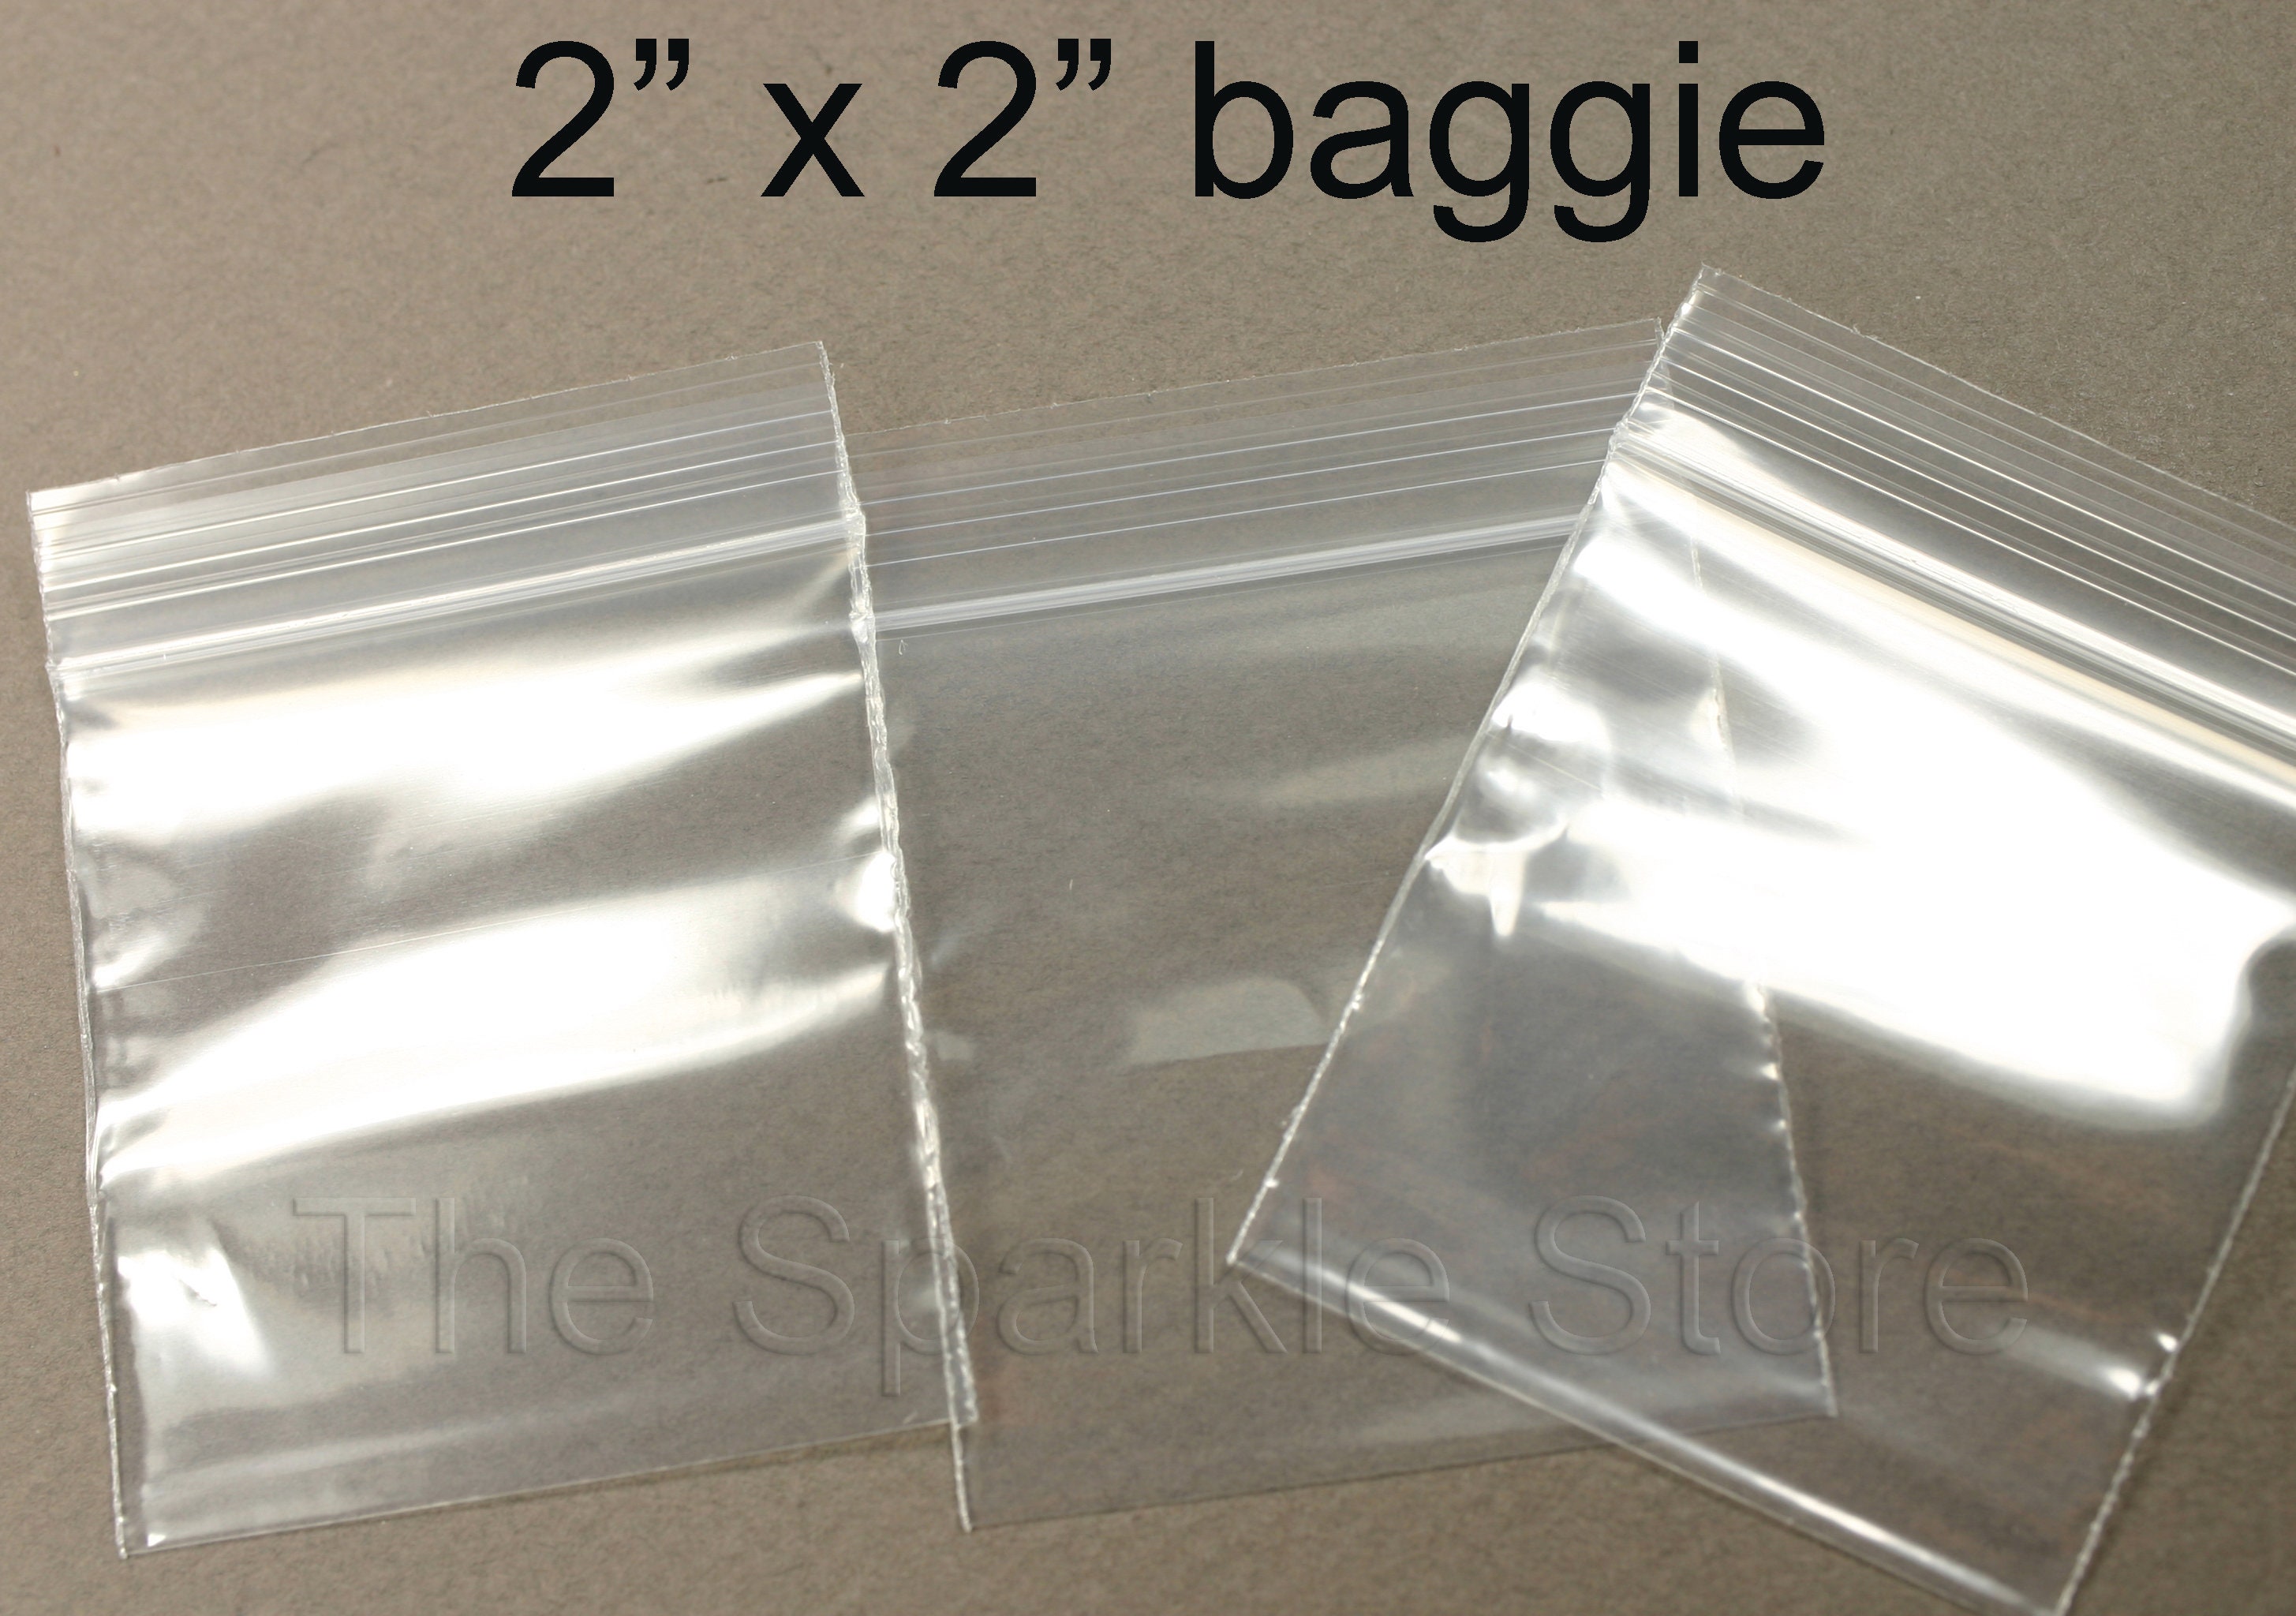 Ejercicio espacio Cubeta Mini Zipper Bags 2 X 2 2 Mil Poly Small Zipper - Etsy